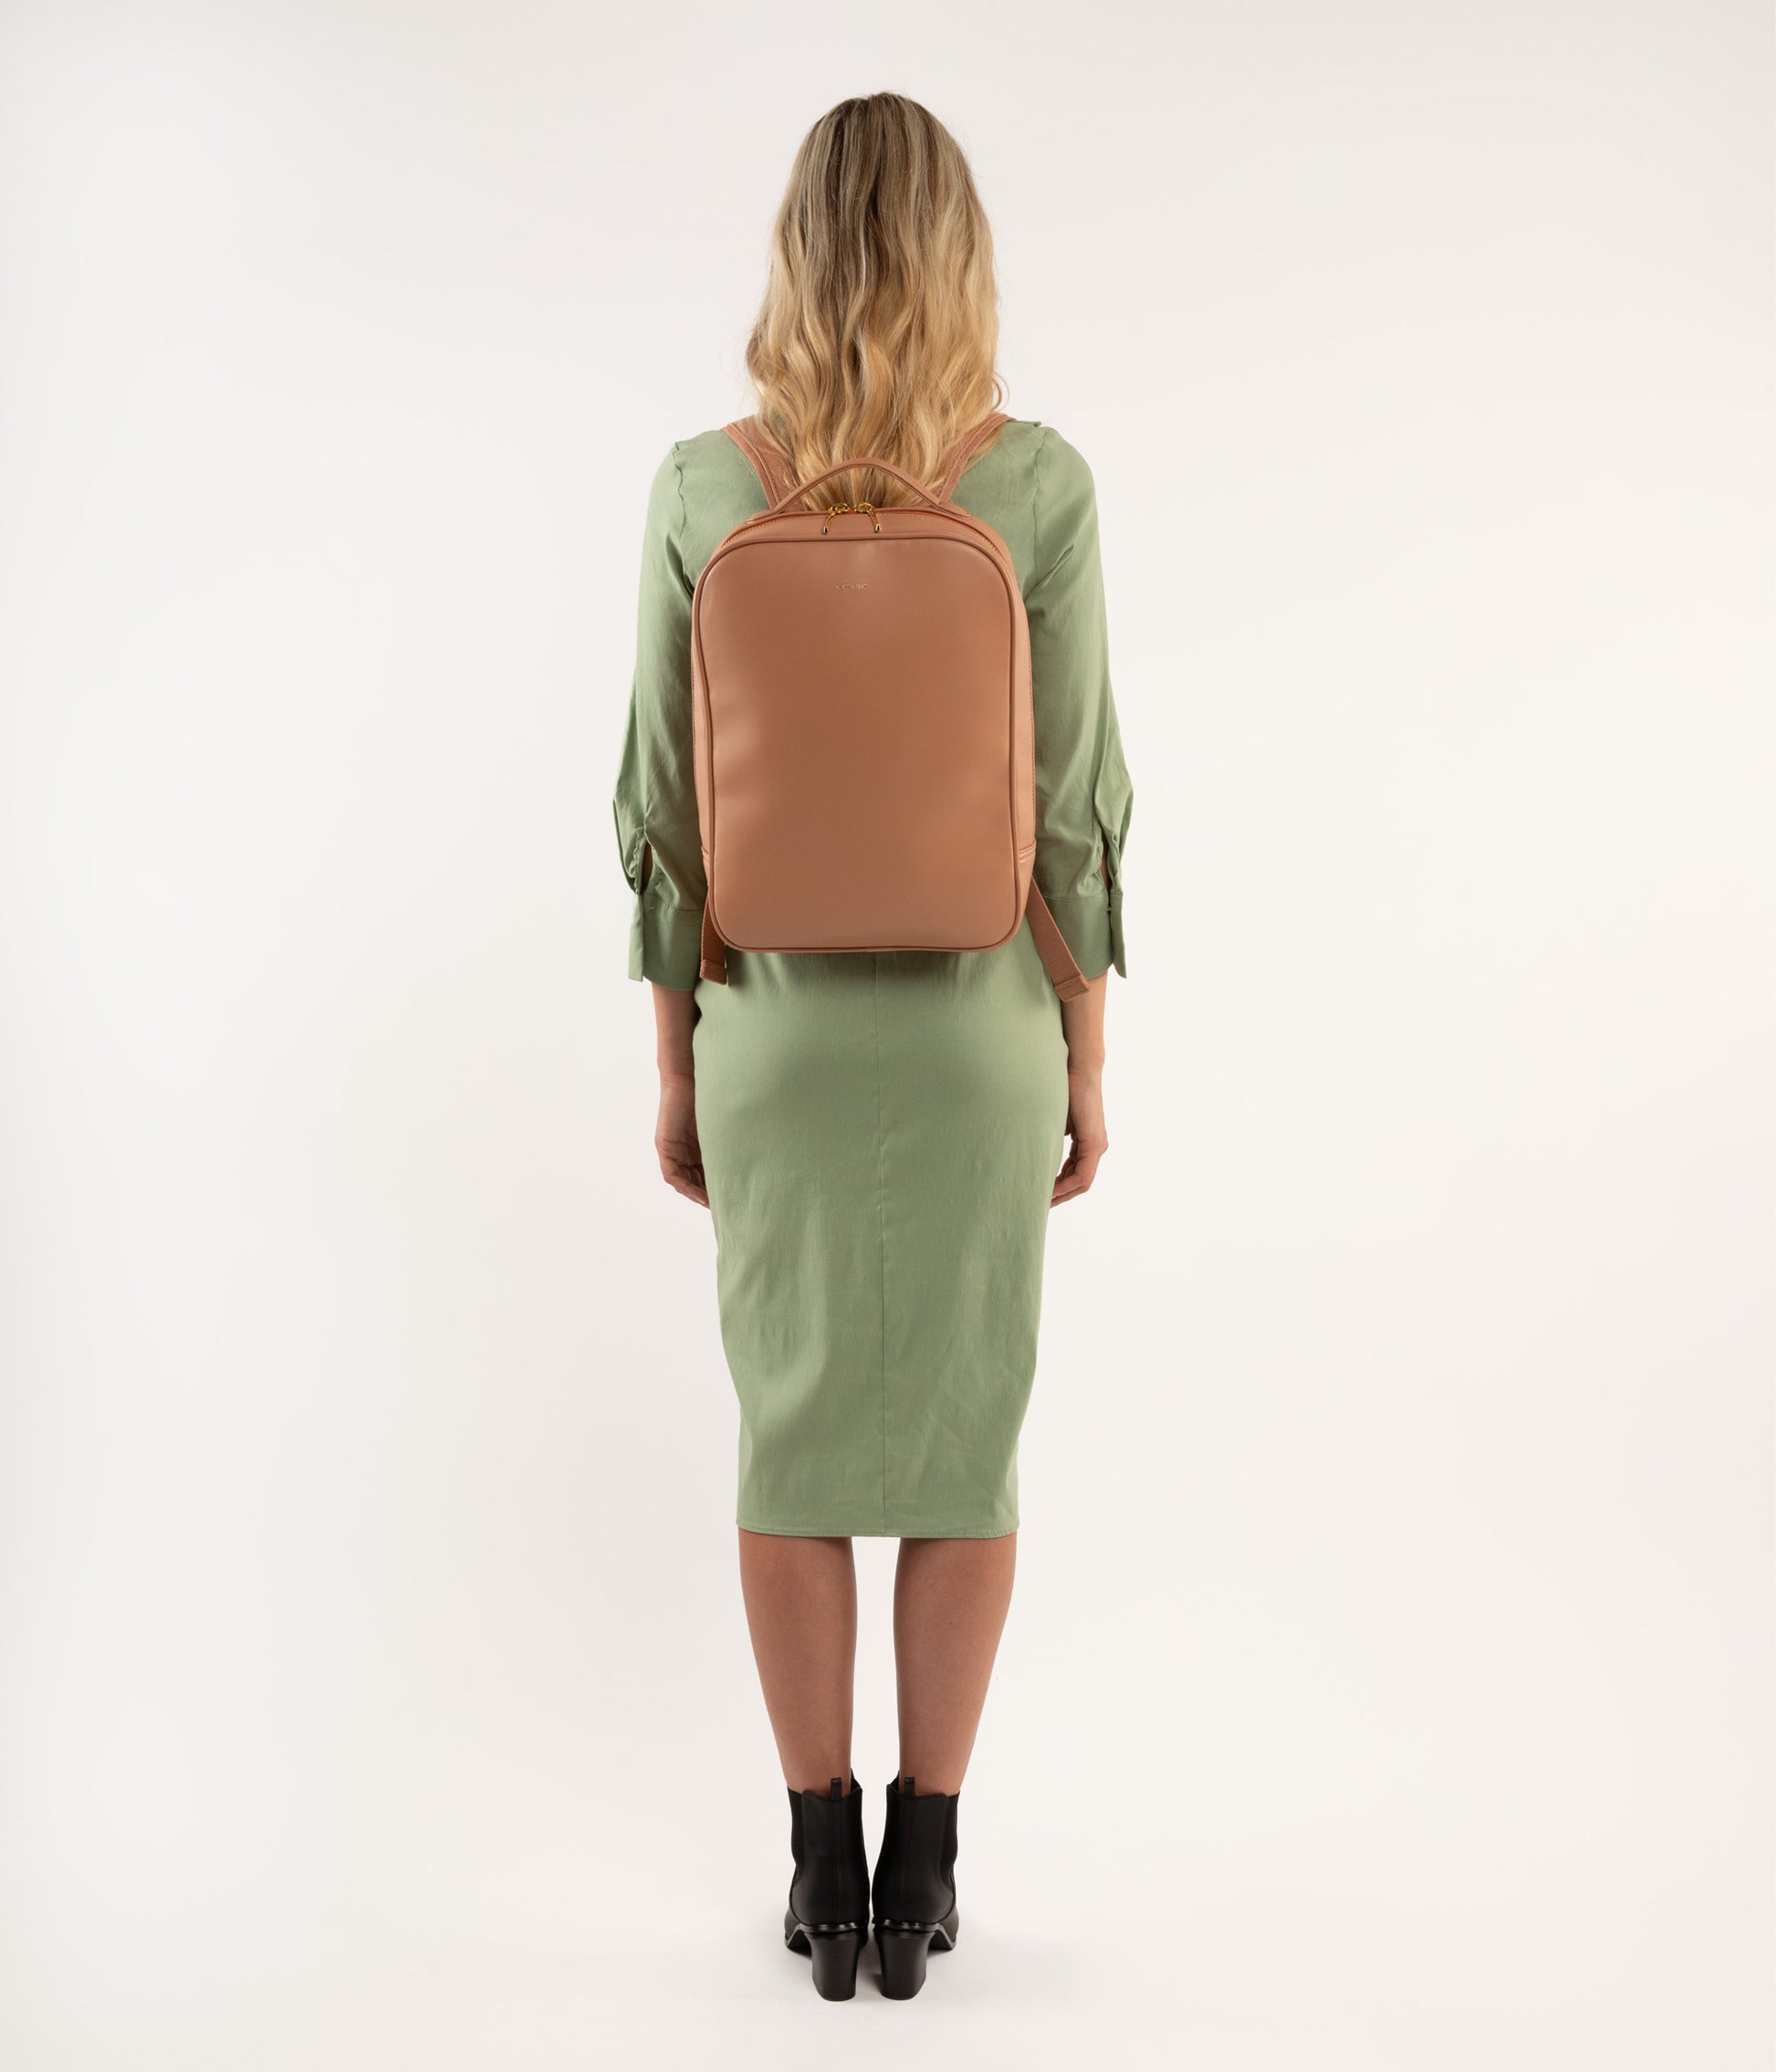 ALEX Vegan Backpack - Loom | Color: Brown - variant::espresso